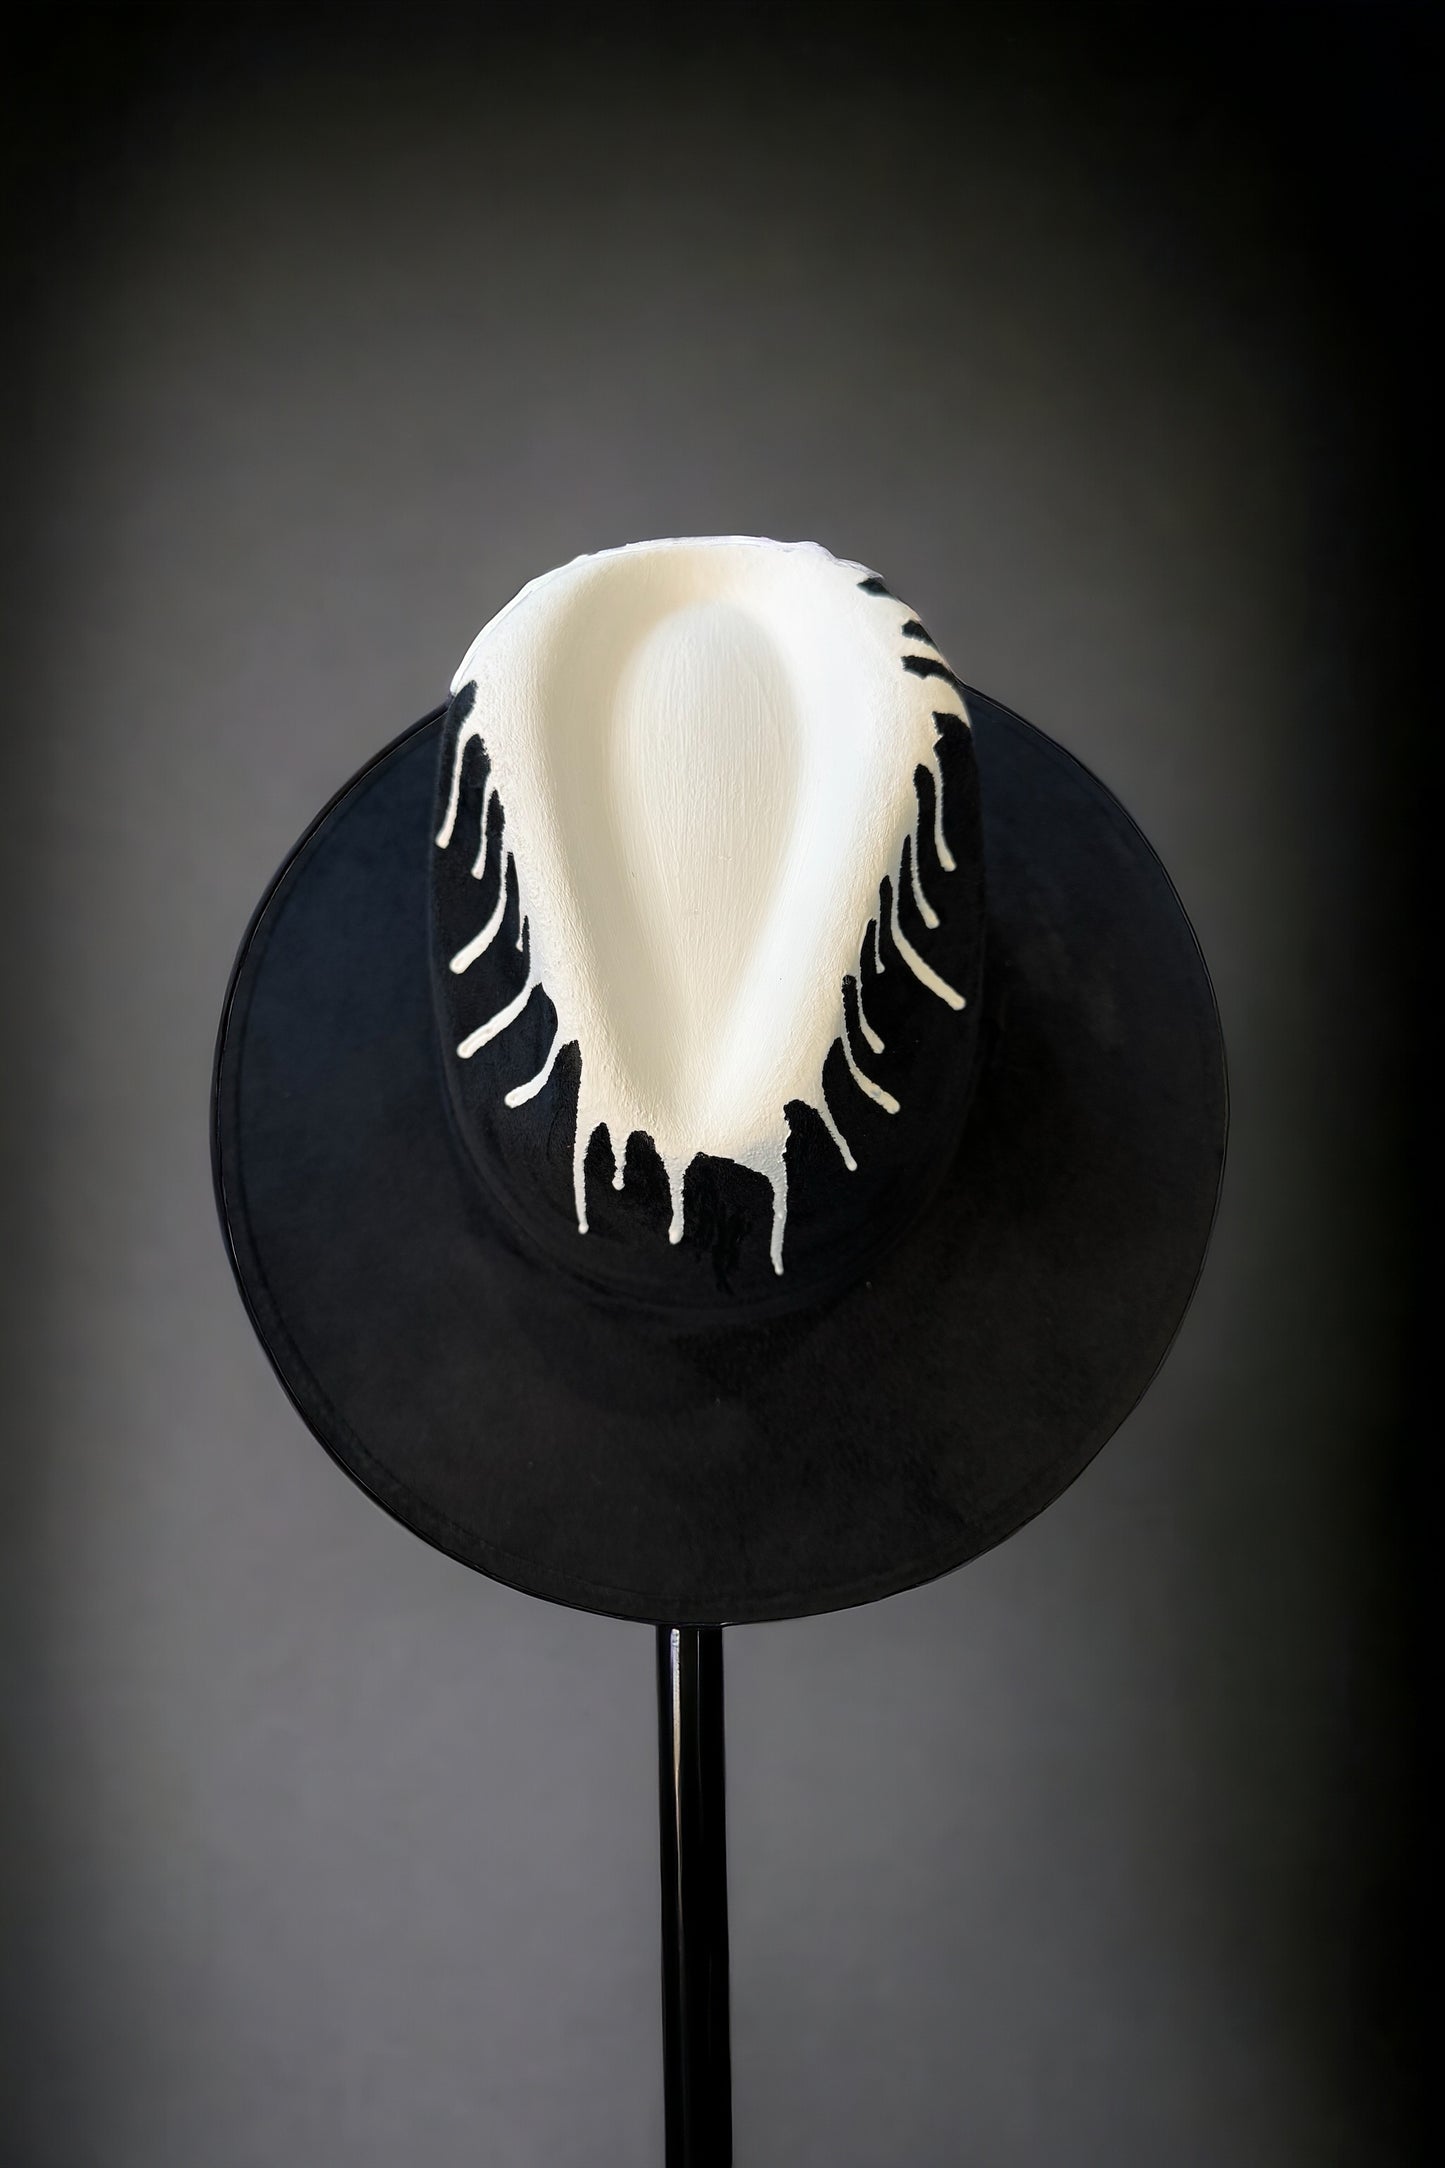 Artist Drip Black Suede Hat